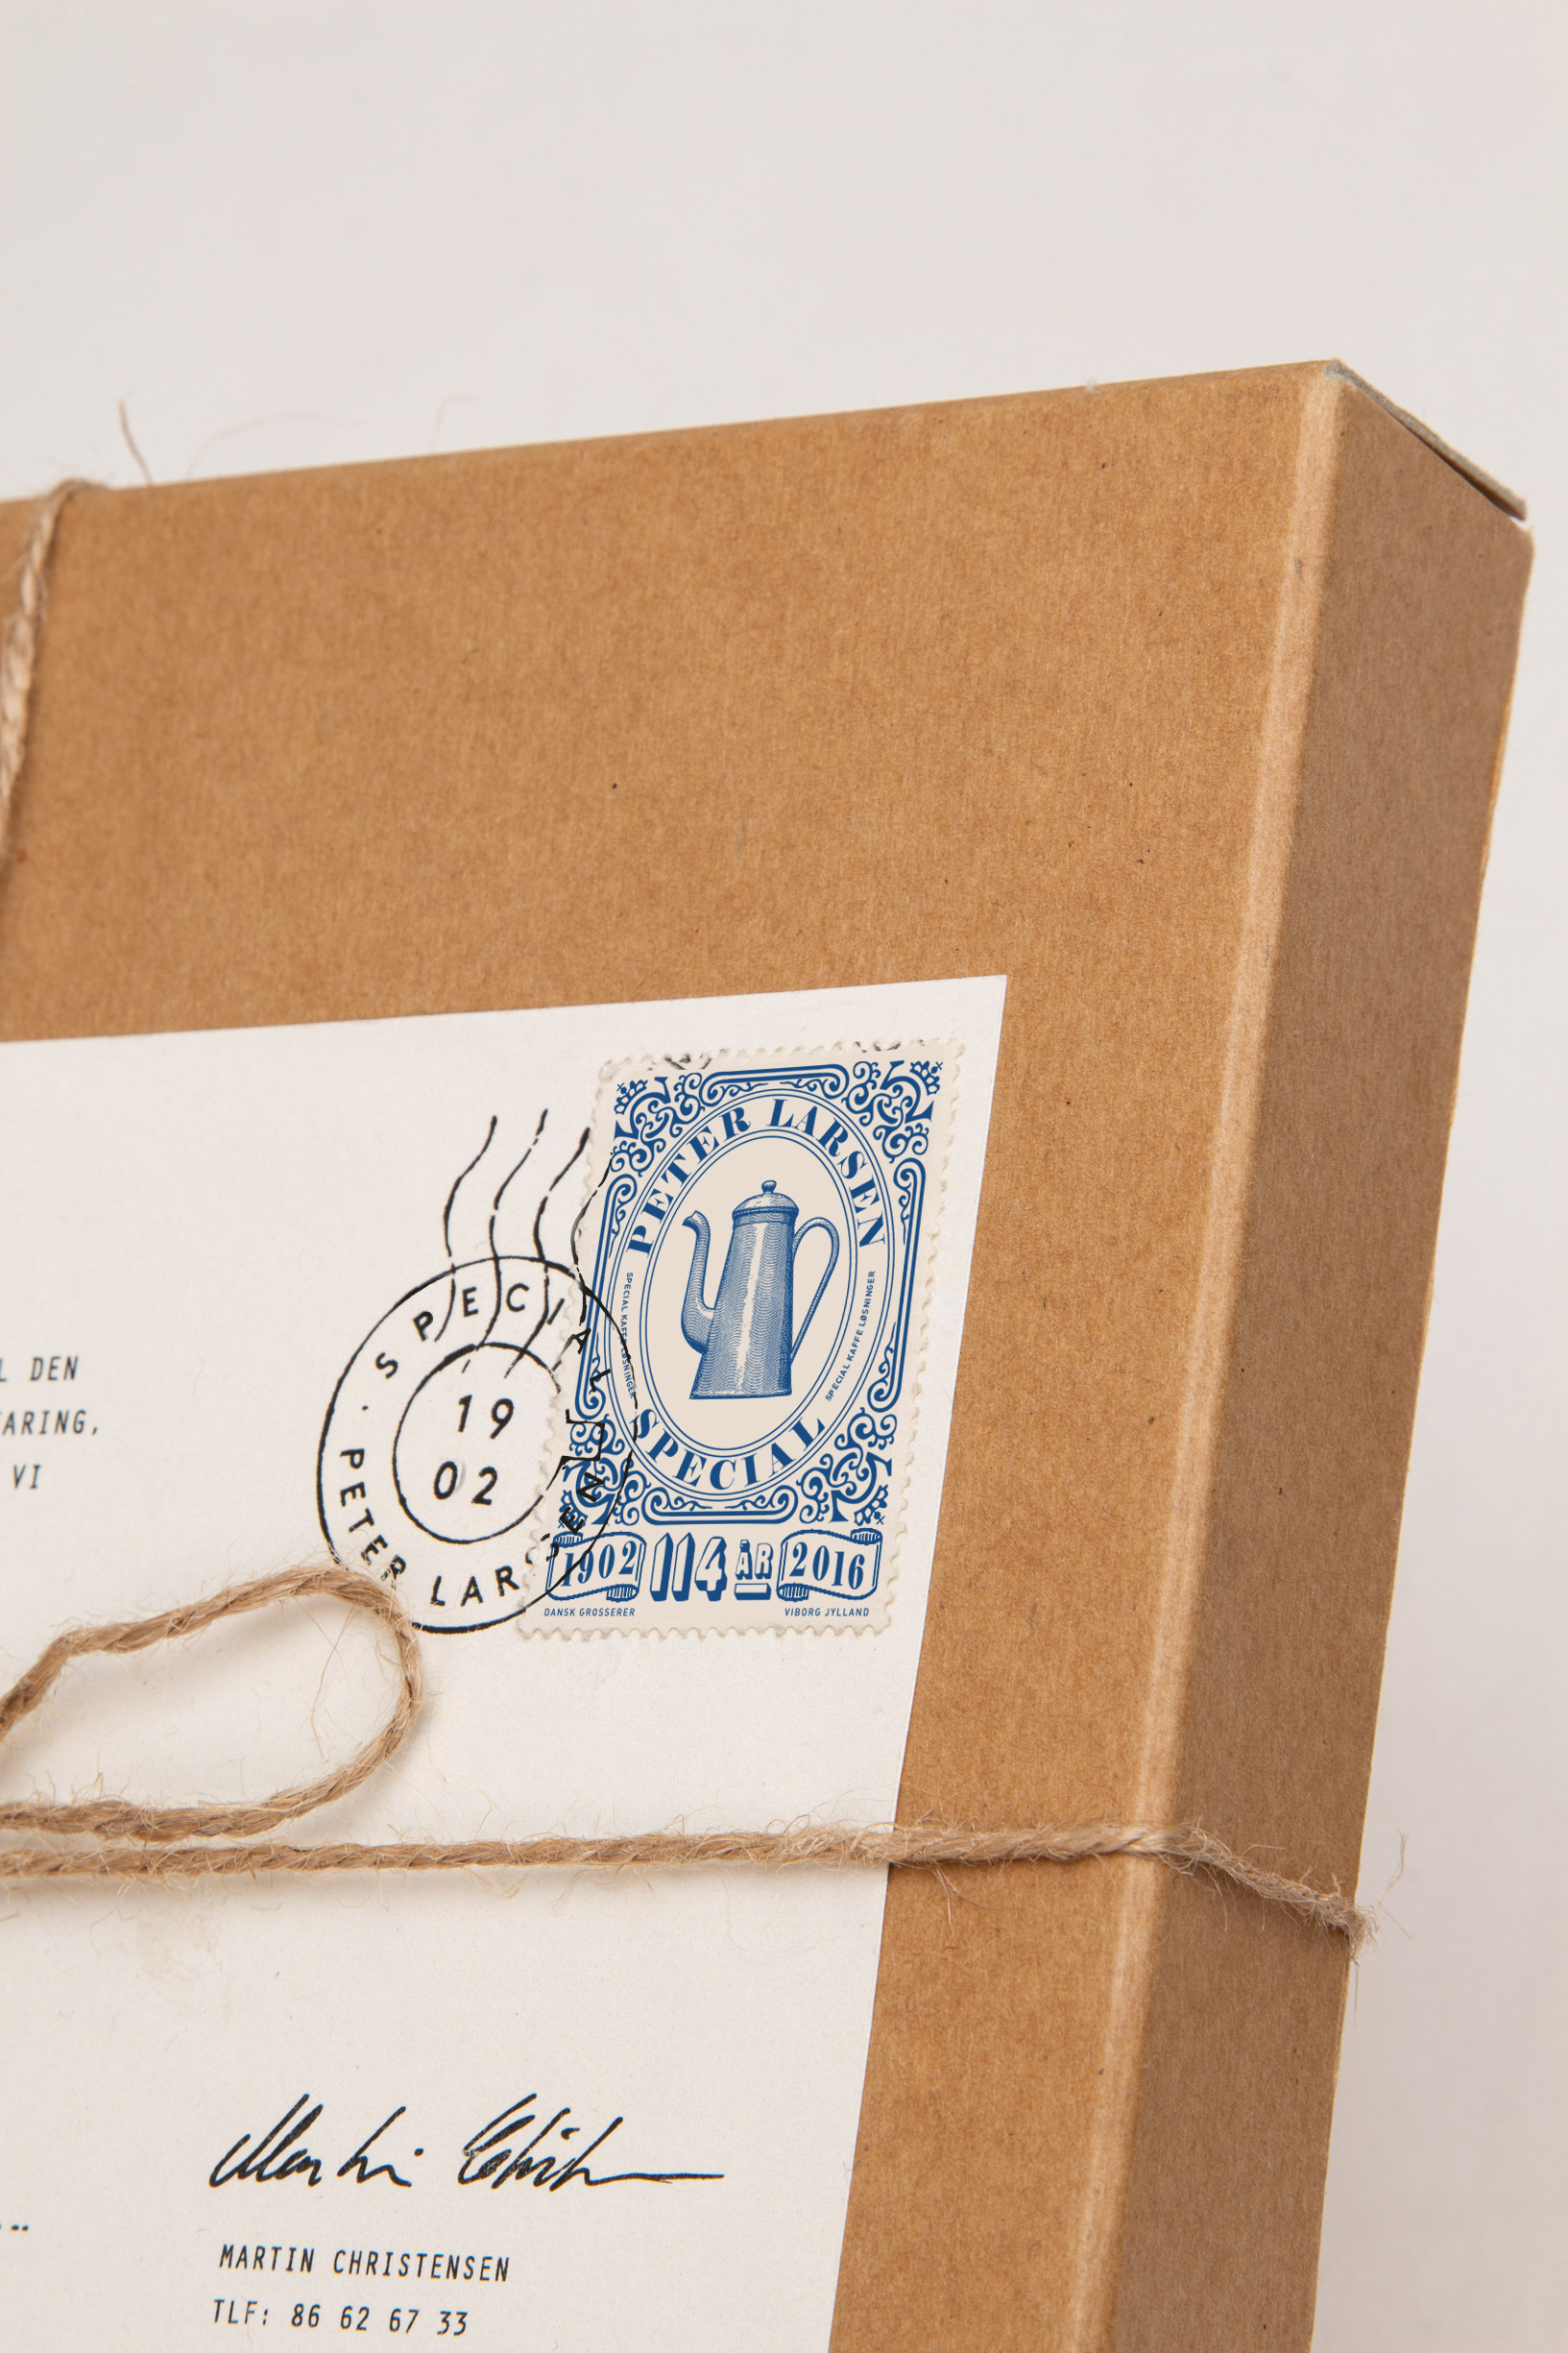 Peter-Larsen-Special-box-stamp